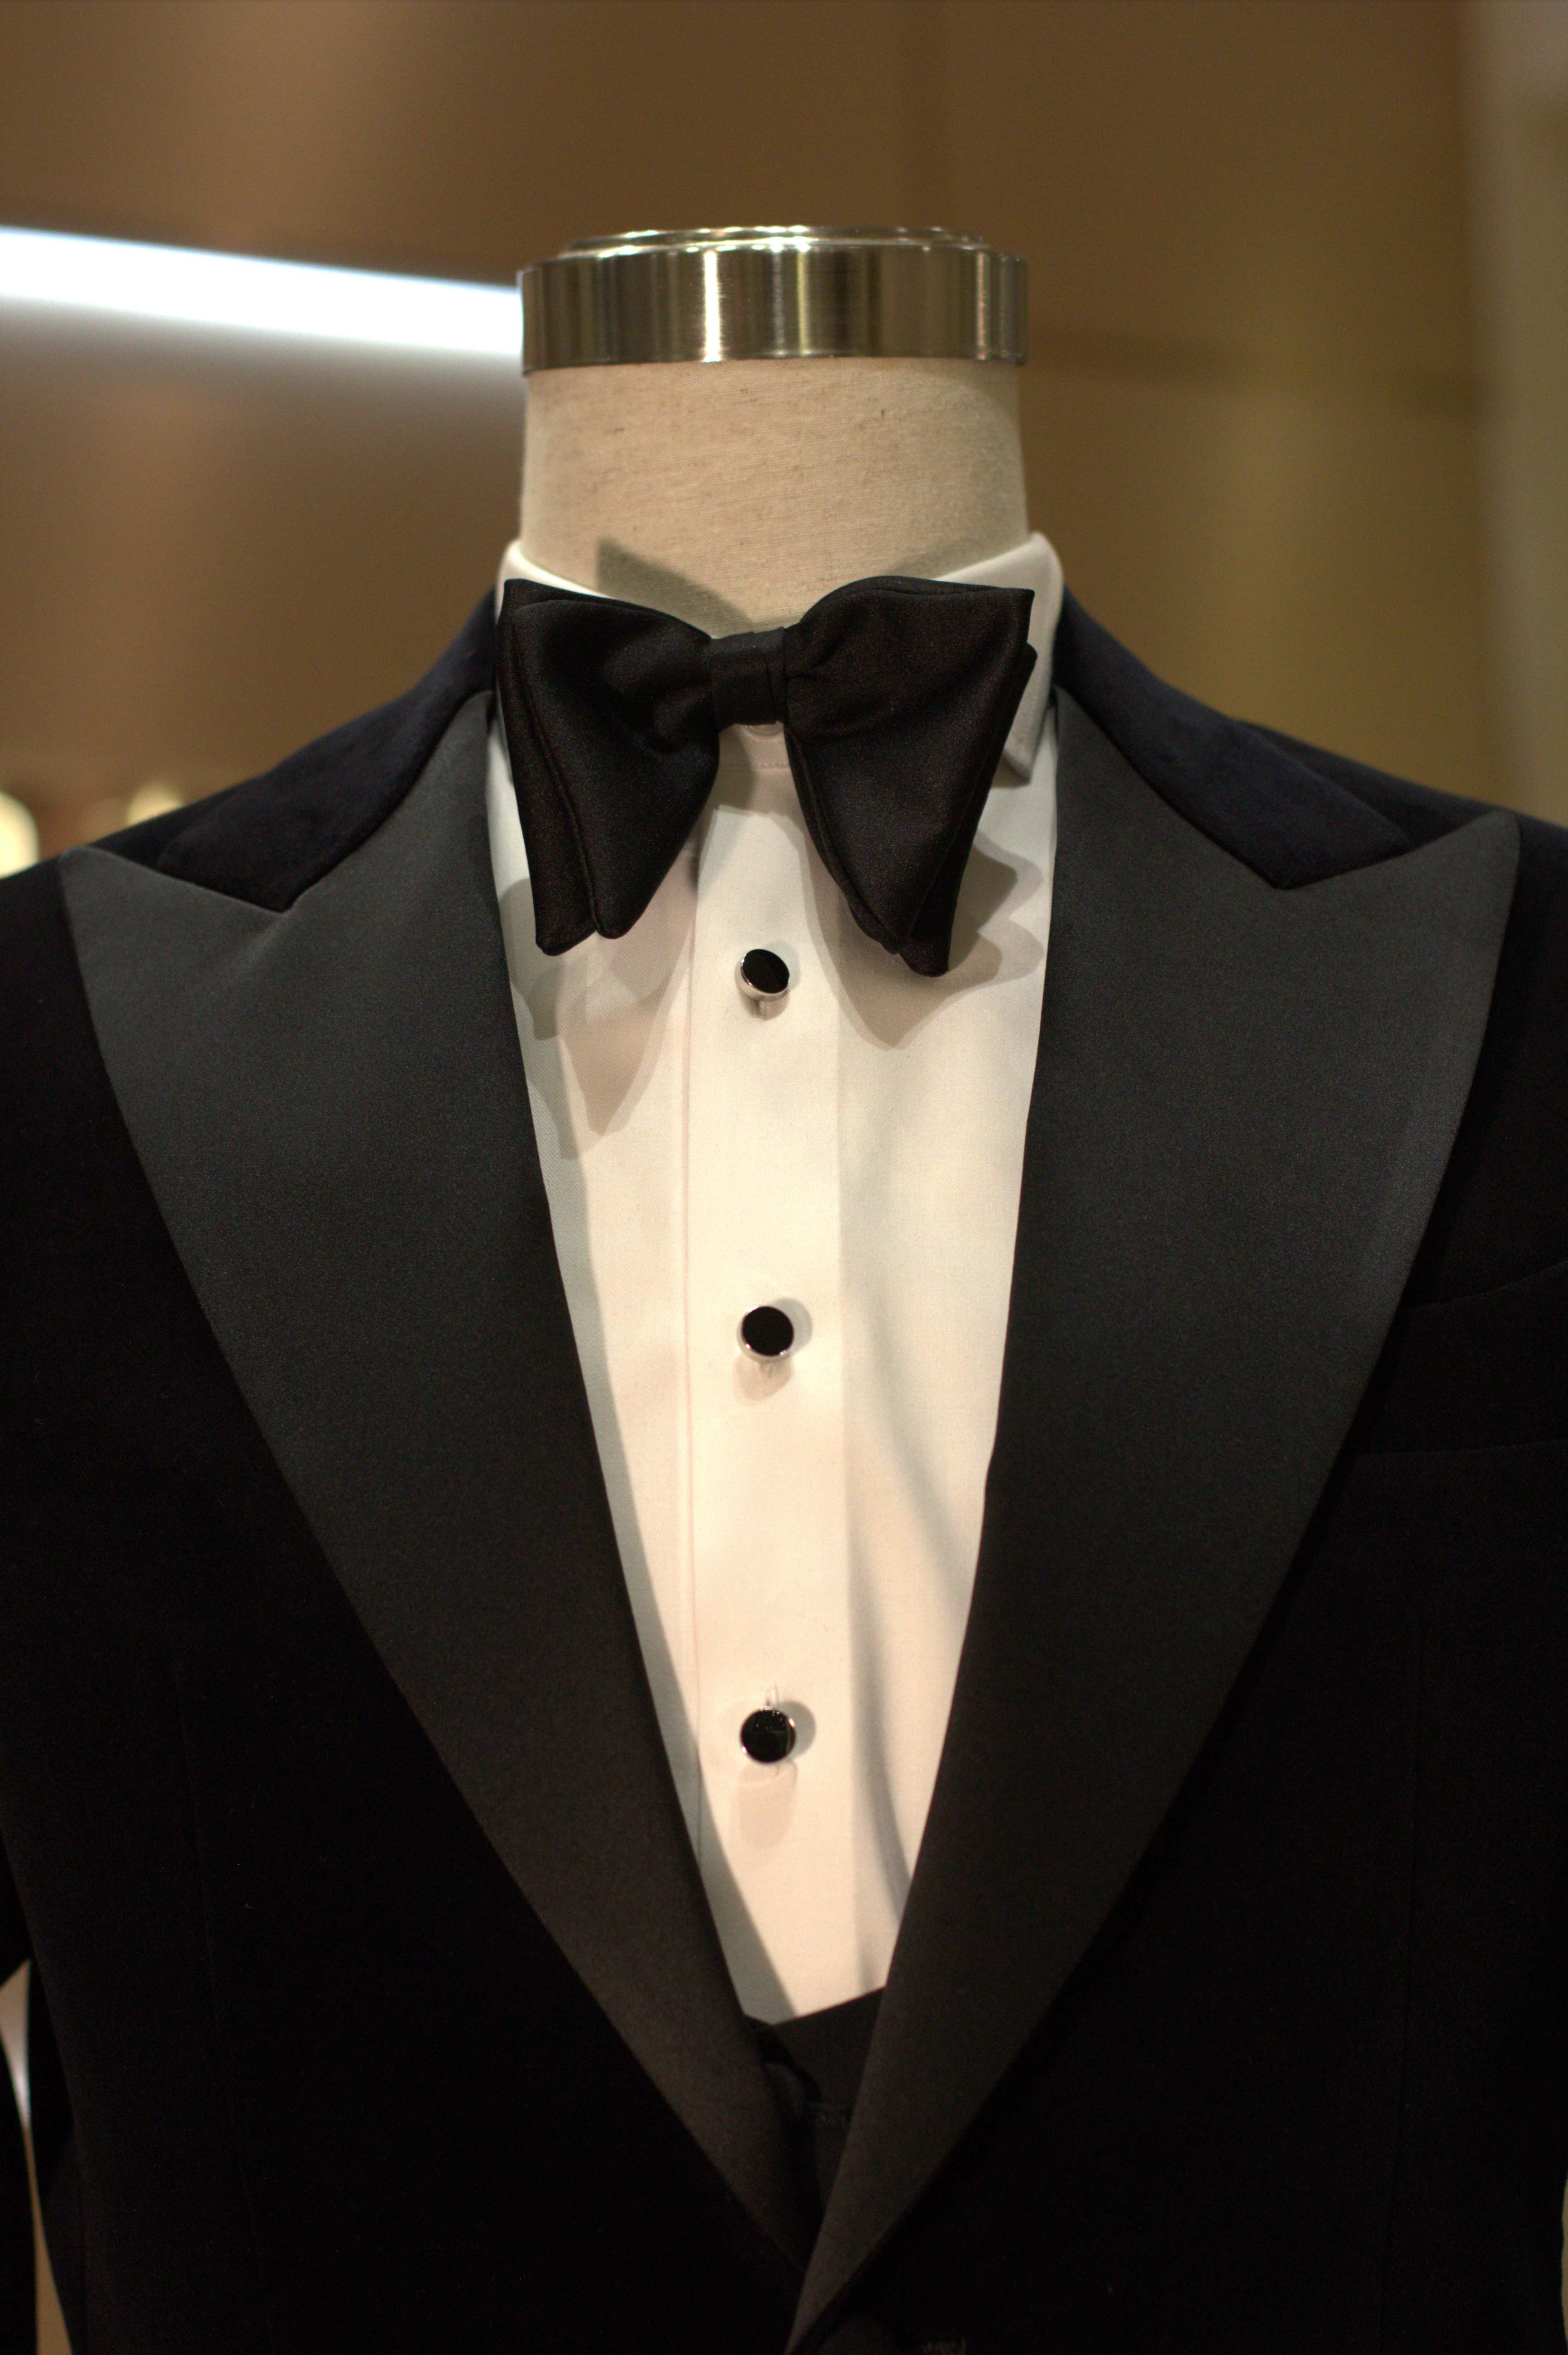 Thiết kế này được làm từ chất liệu nhung đen của thương hiệu dệt may nổi tiếng Loro Piana. Chi tiết ve nhọn đặc trưng kèm áo gile giúp người diện thể hiện thần thái quý ông (Ảnh: Nhân vật cung cấp).